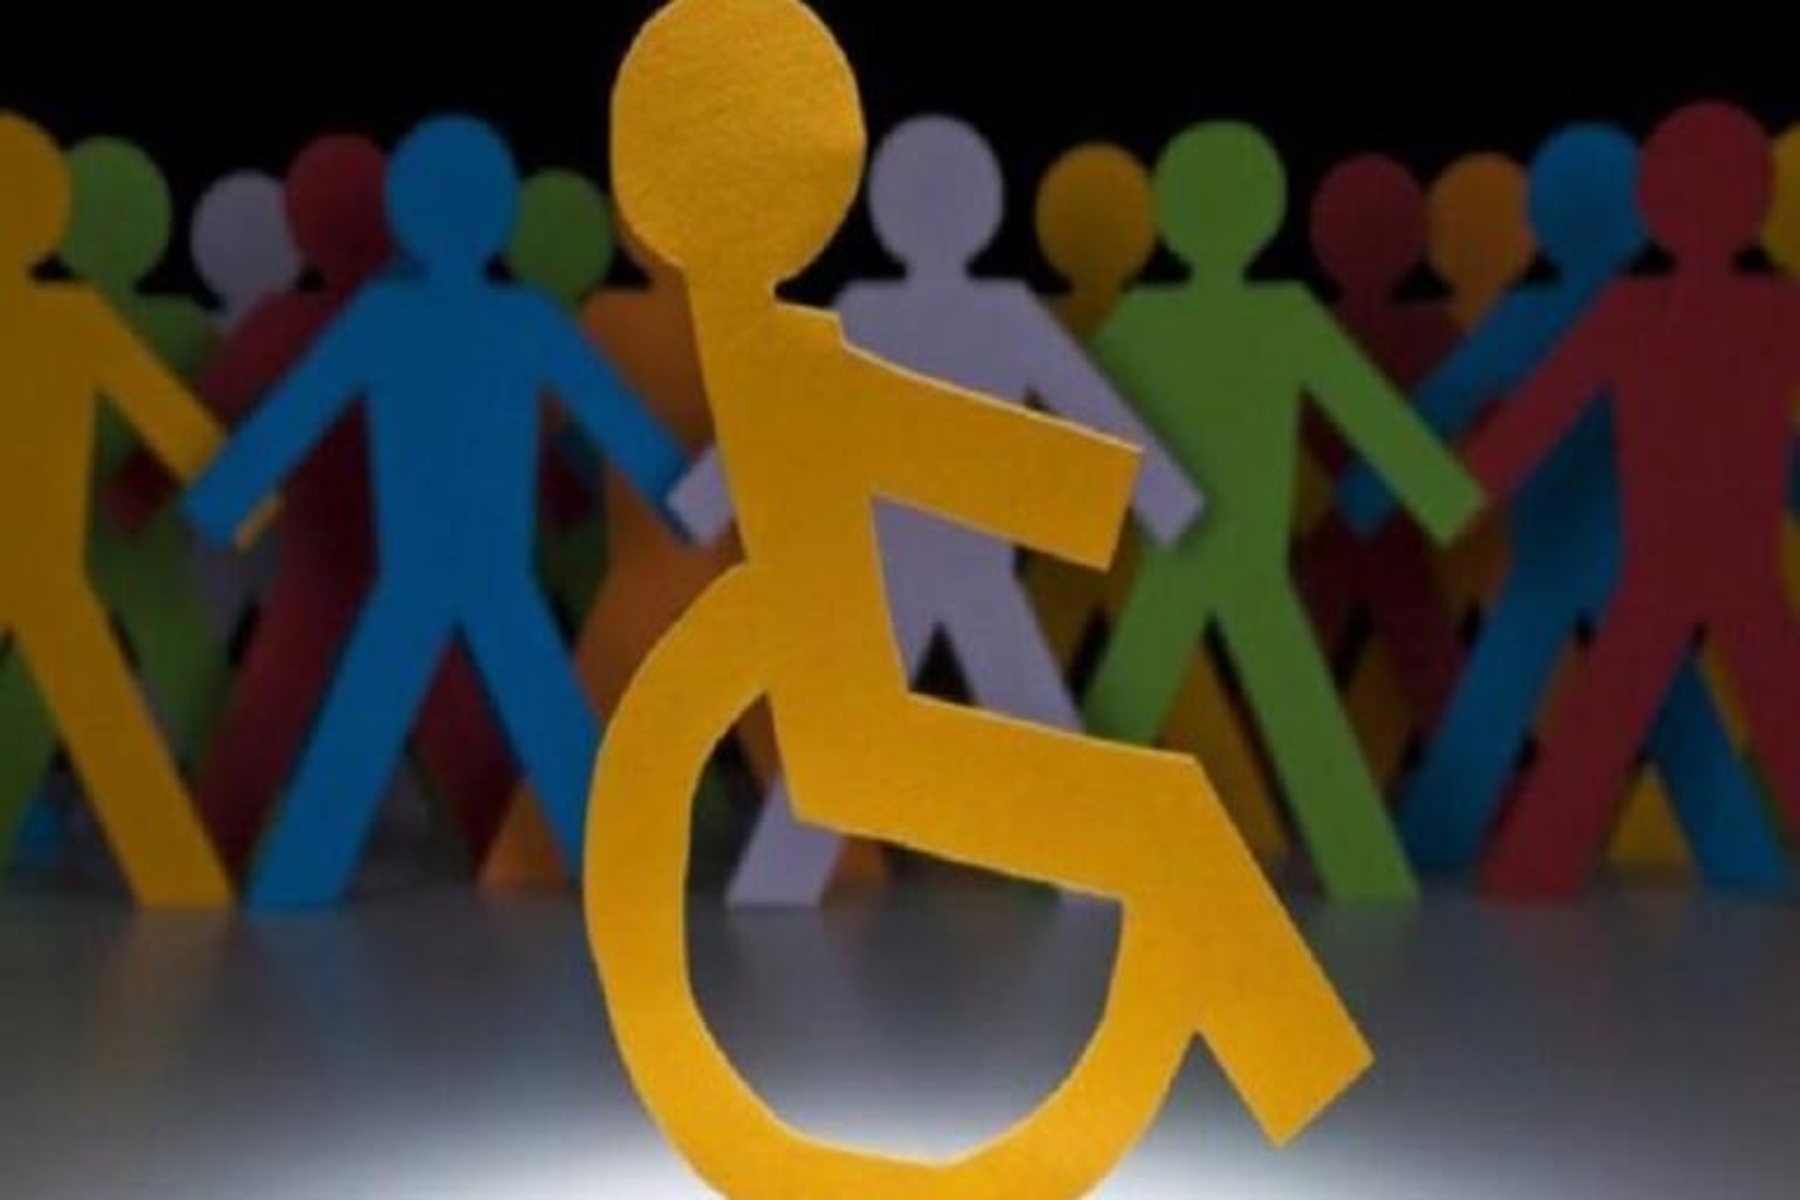 ΕΣΑμεΑ: Στα Χανιά το σεμινάριο με θέμα «προγράμματα δια βίου εκπαίδευσης για την αναπηρία και υποστηρικτικές δράσεις»